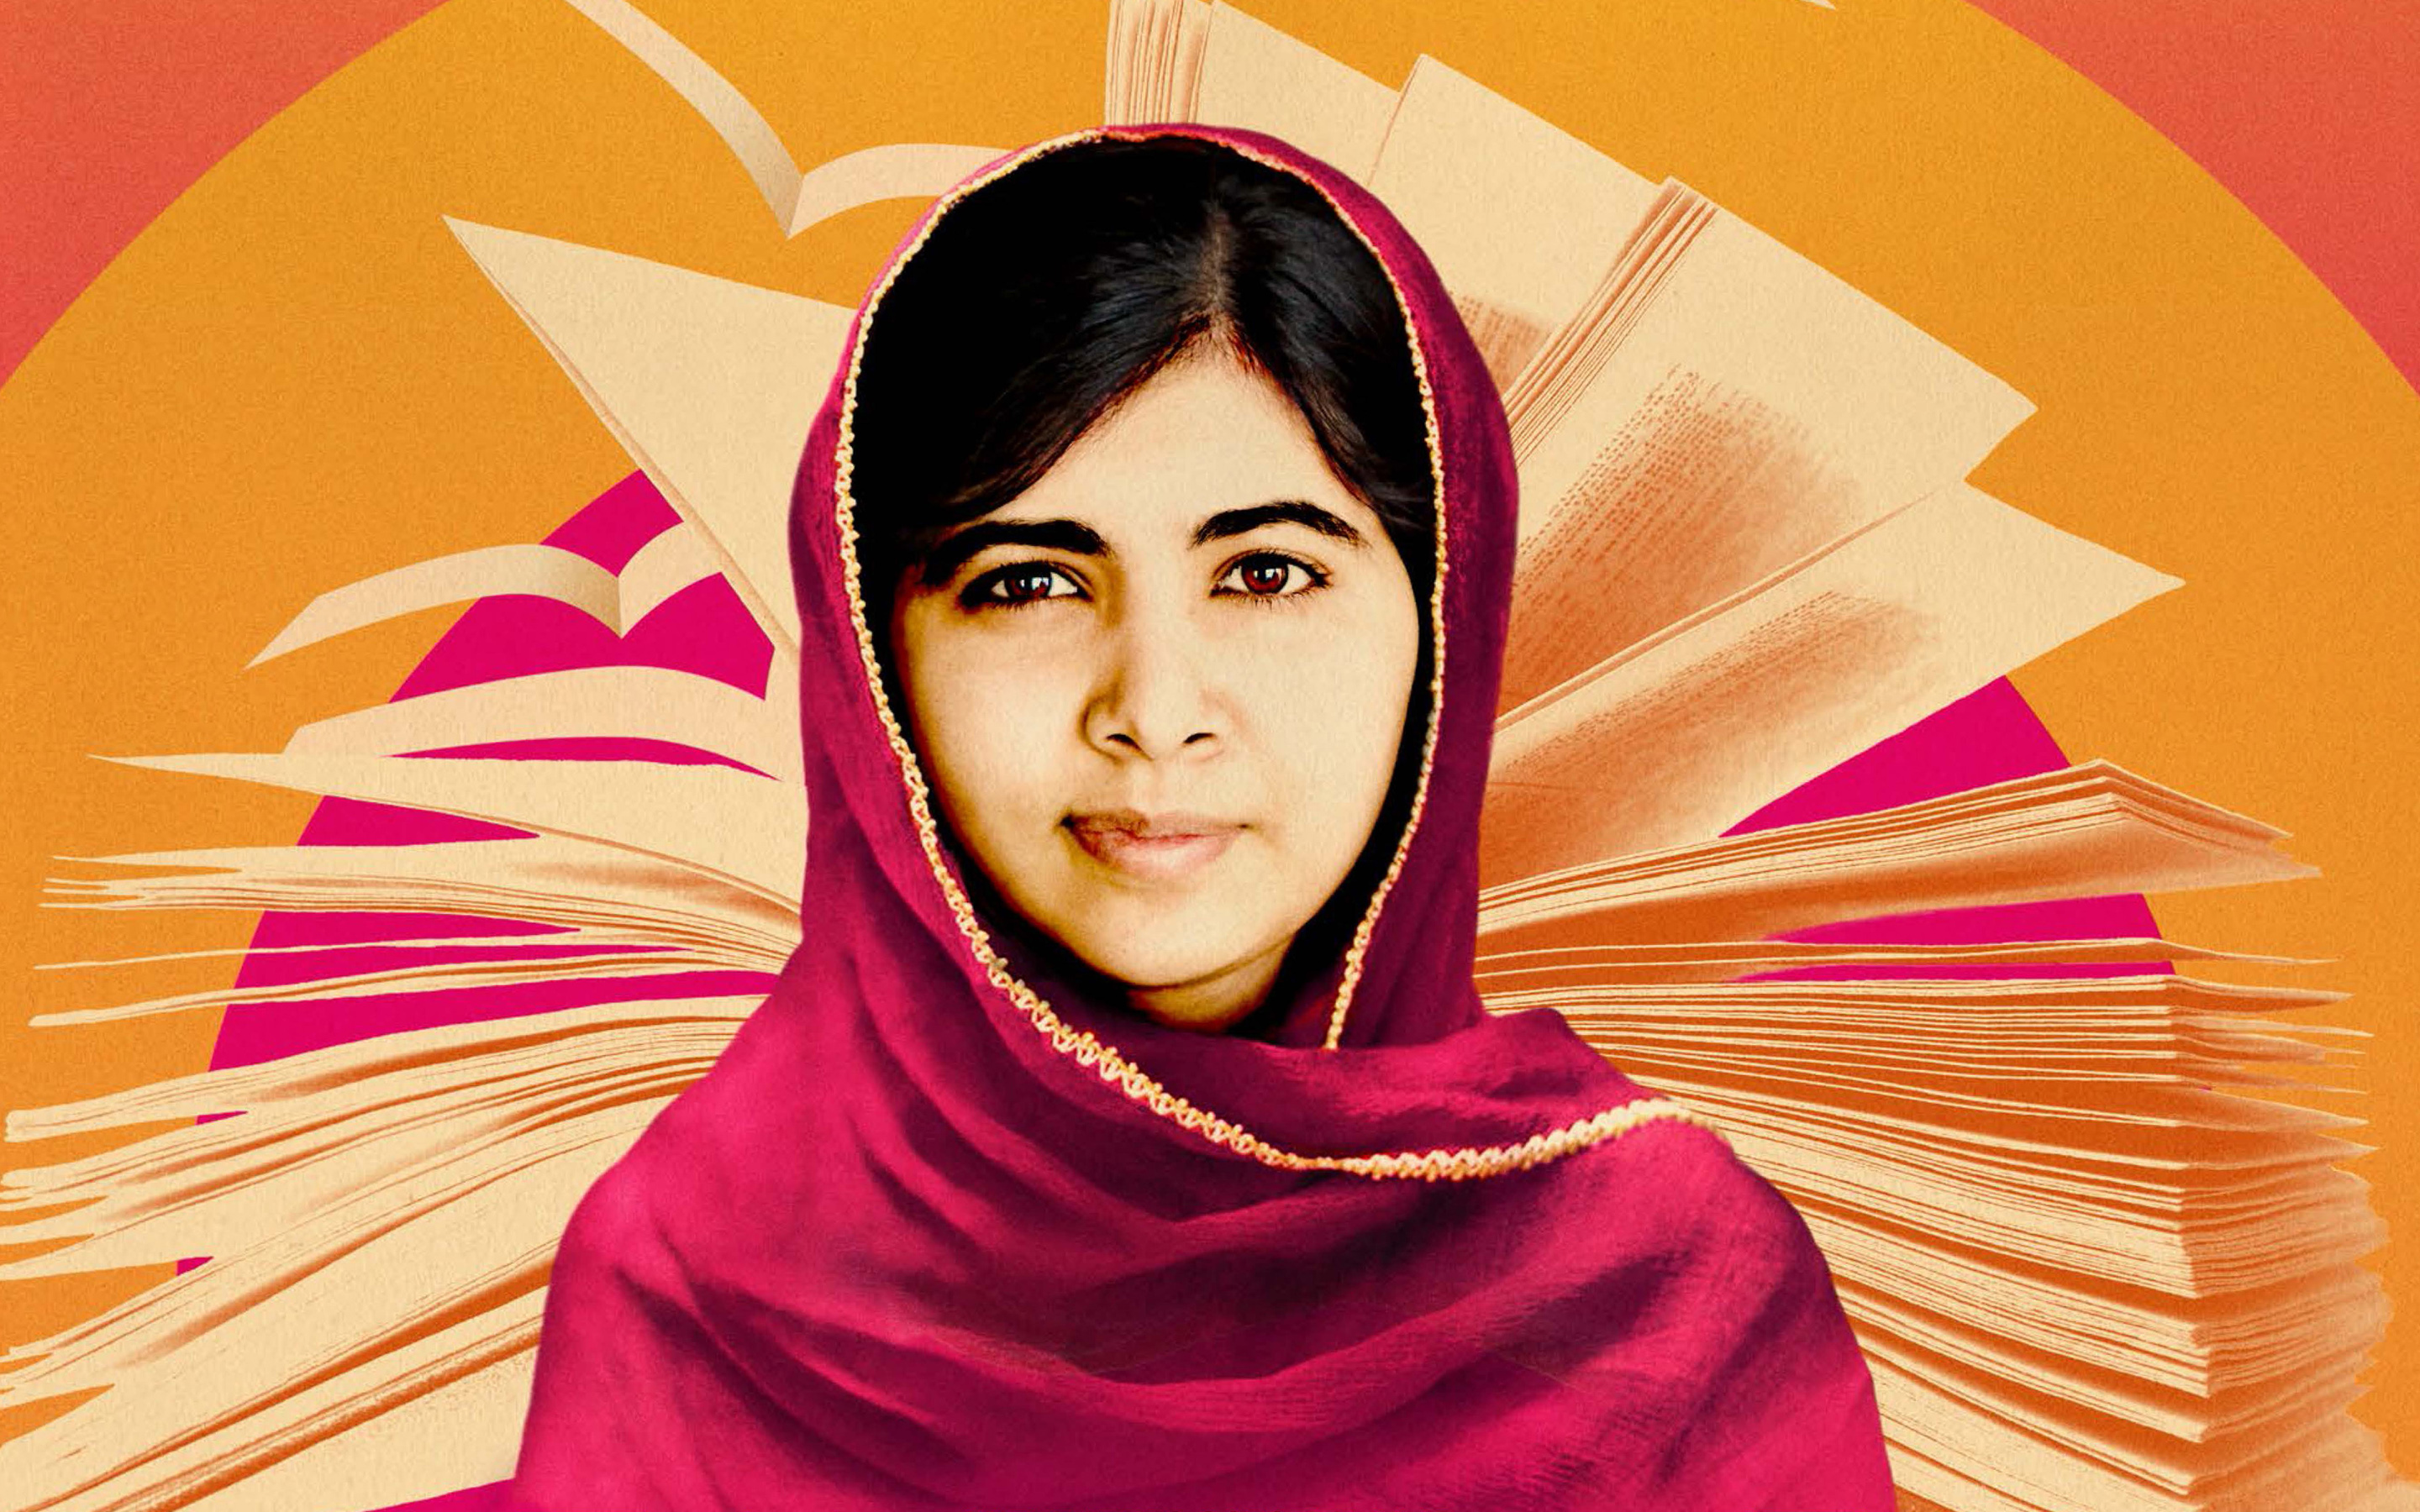 Скачать обои Малала Юсуфзай на телефон бесплатно